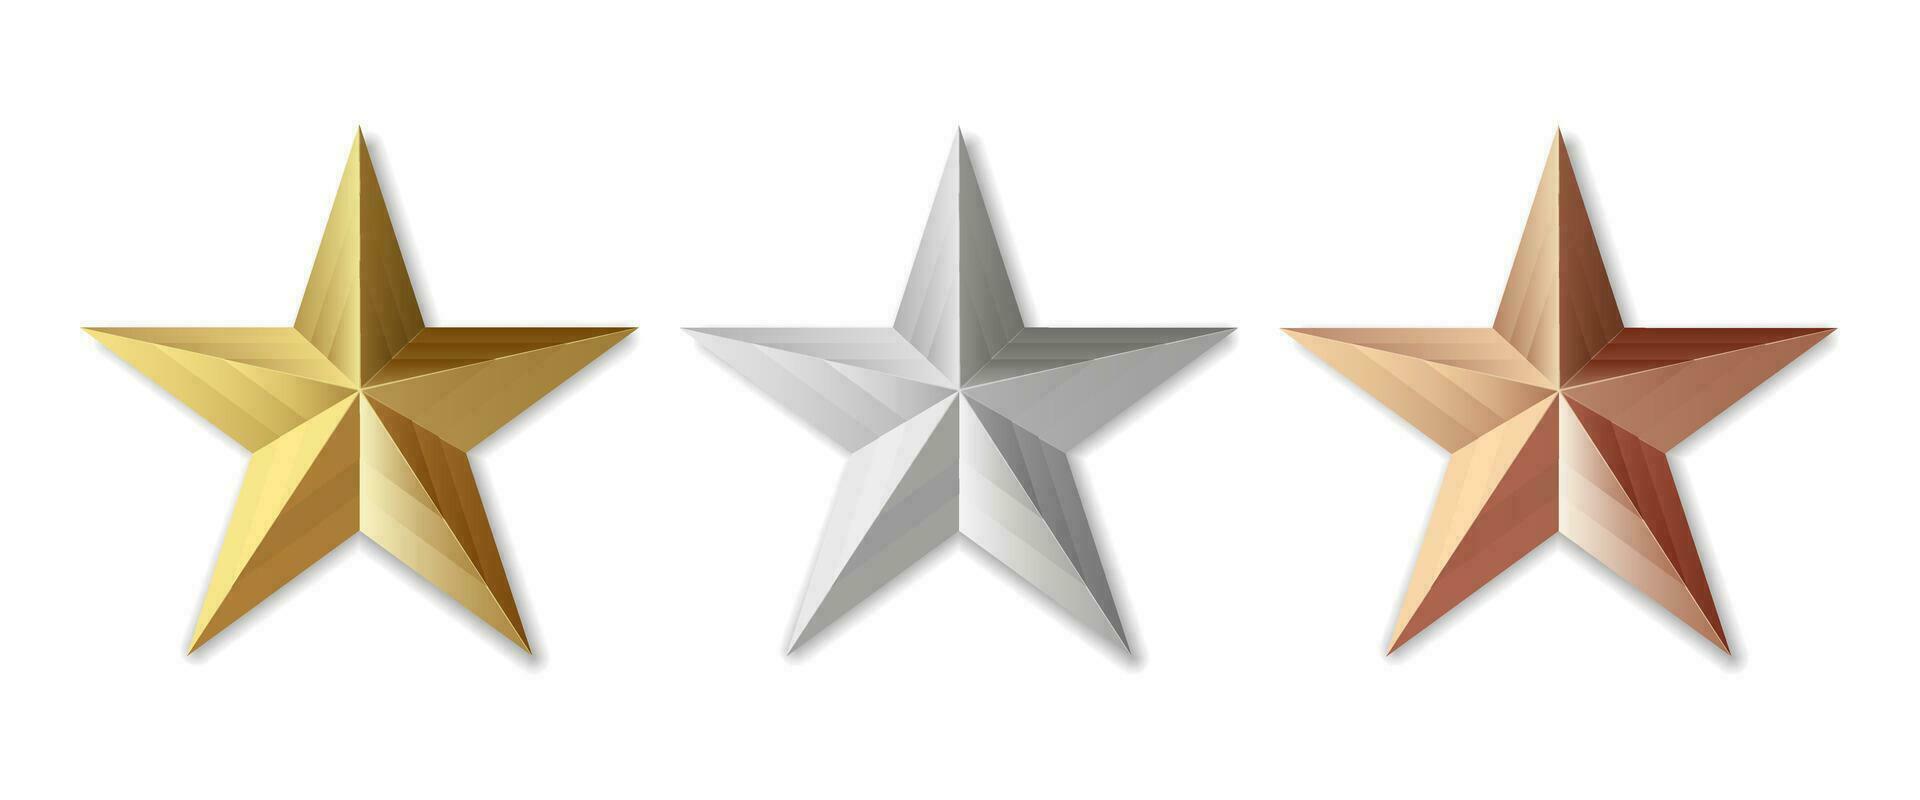 d'oro argento e bronzo stella Prodotto valutazione revisione per applicazioni e siti web vettore